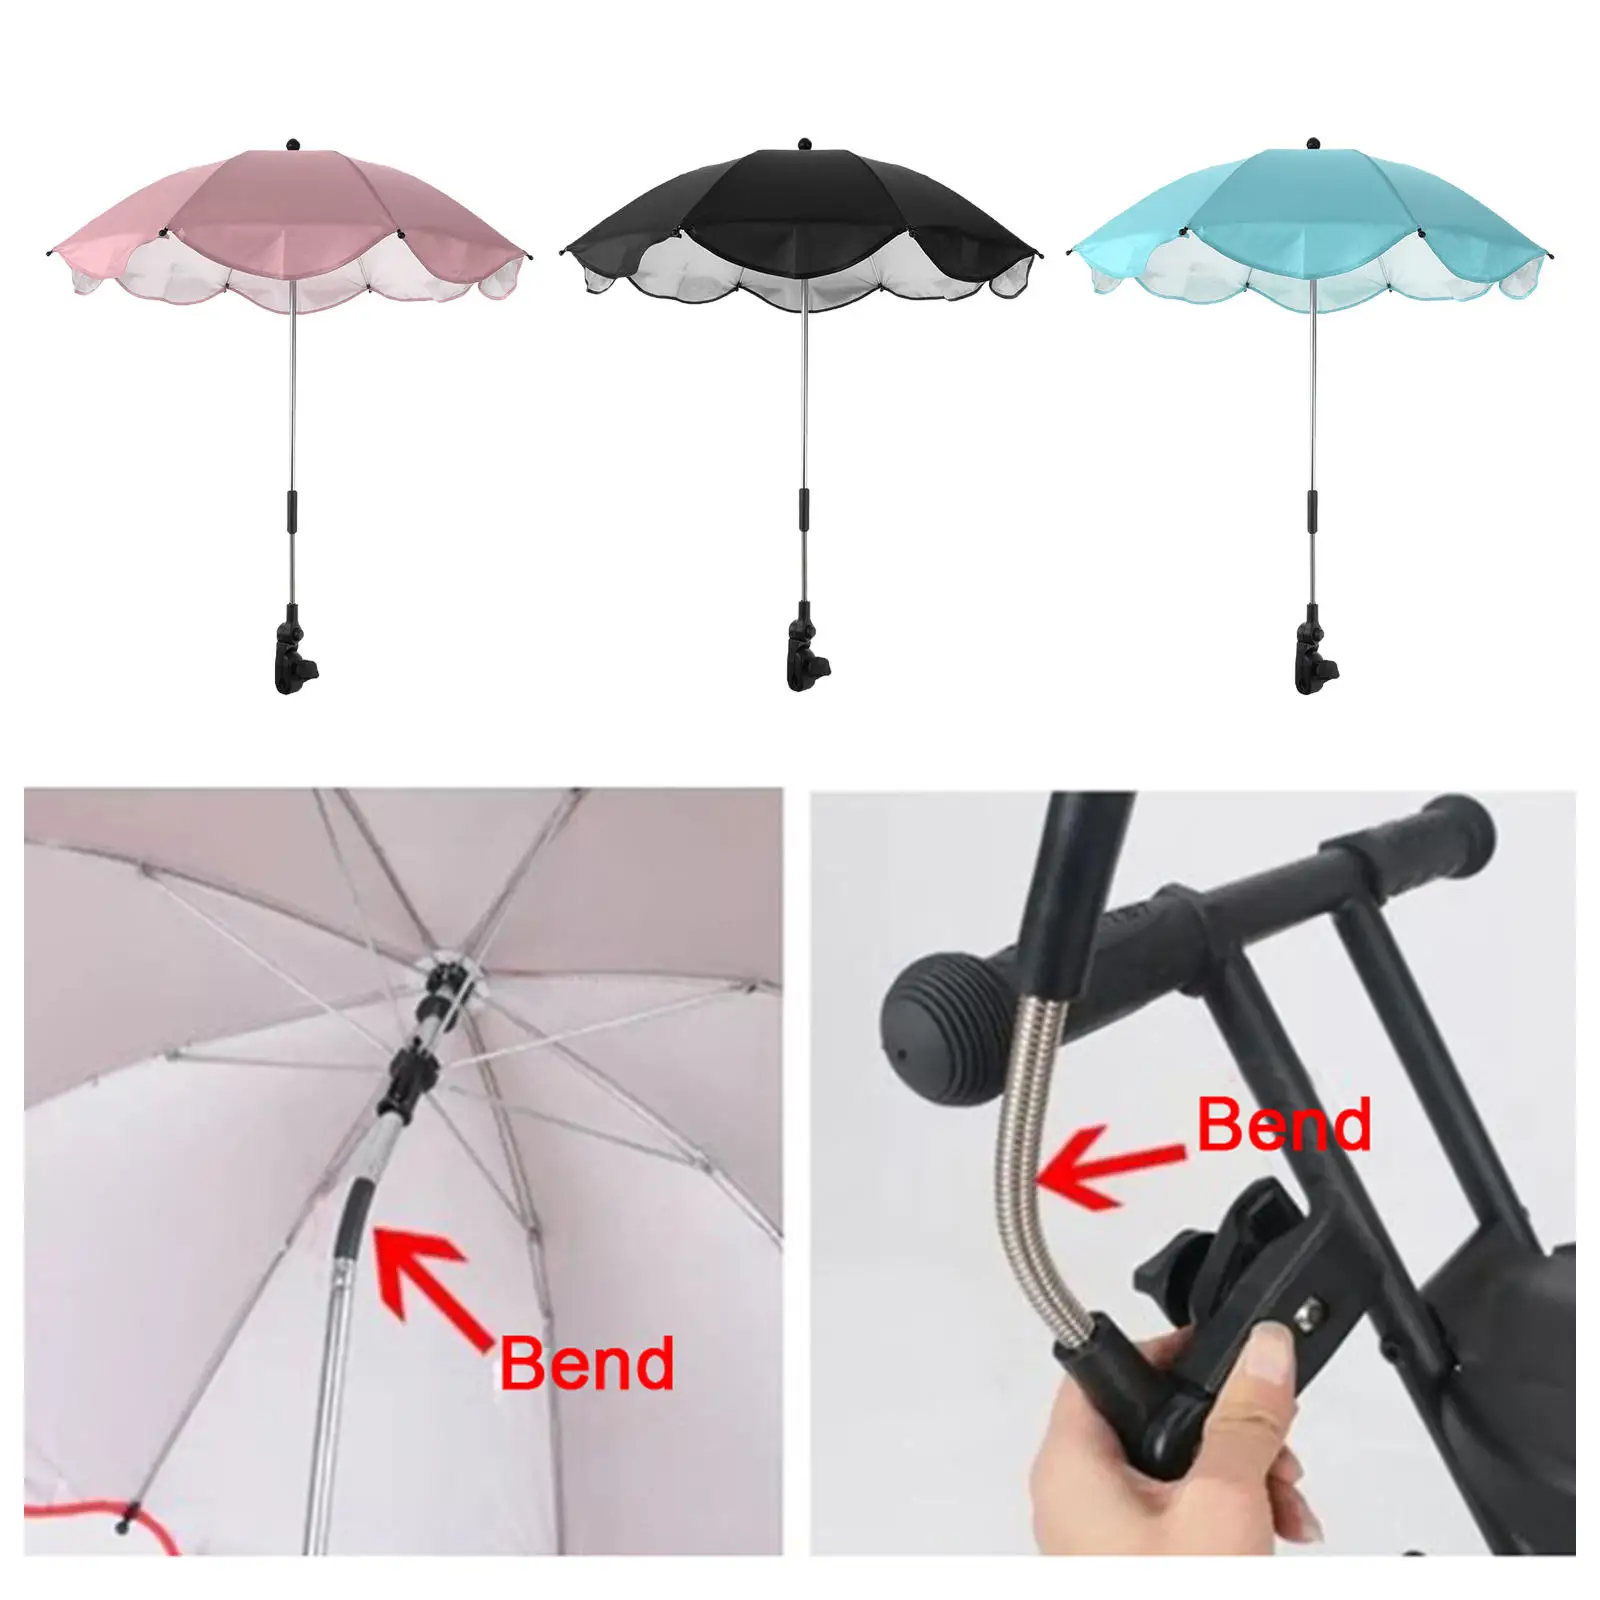 

Регулируемый зонт для детской коляски с защитой от дождя и УФ-лучей, складной тент от солнца на 360 градусов, тенты для коляски, багги, коляски